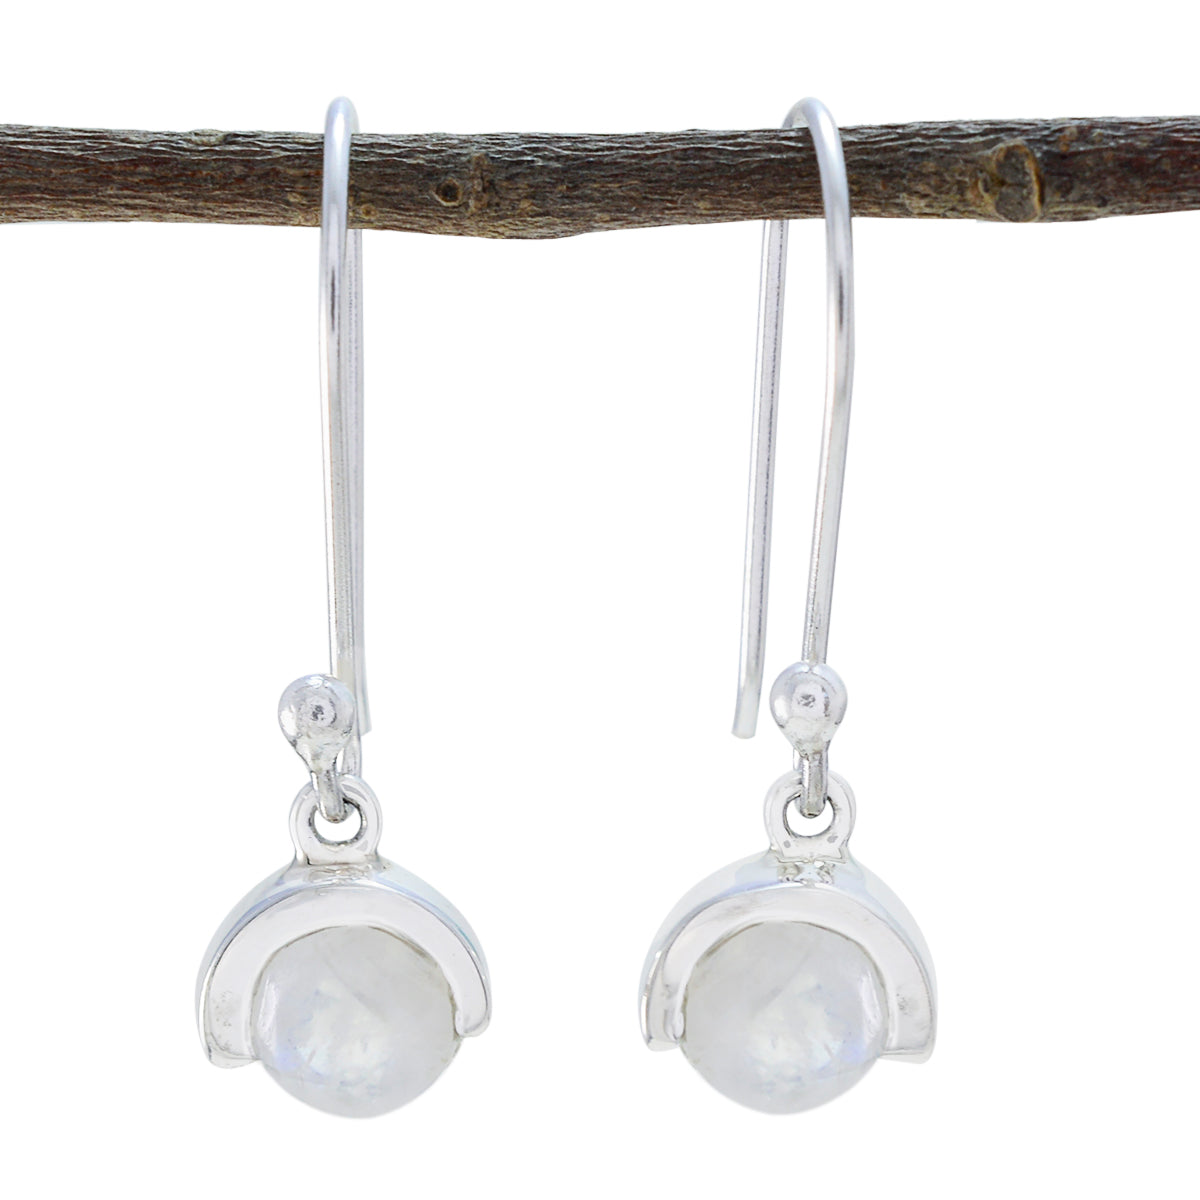 Riyo Schöne 925 Sterling Silber Ohrring Für Frauen Regenbogen Mondstein Ohrring Lünette Fassung Weiß Ohrring Baumeln Ohrring